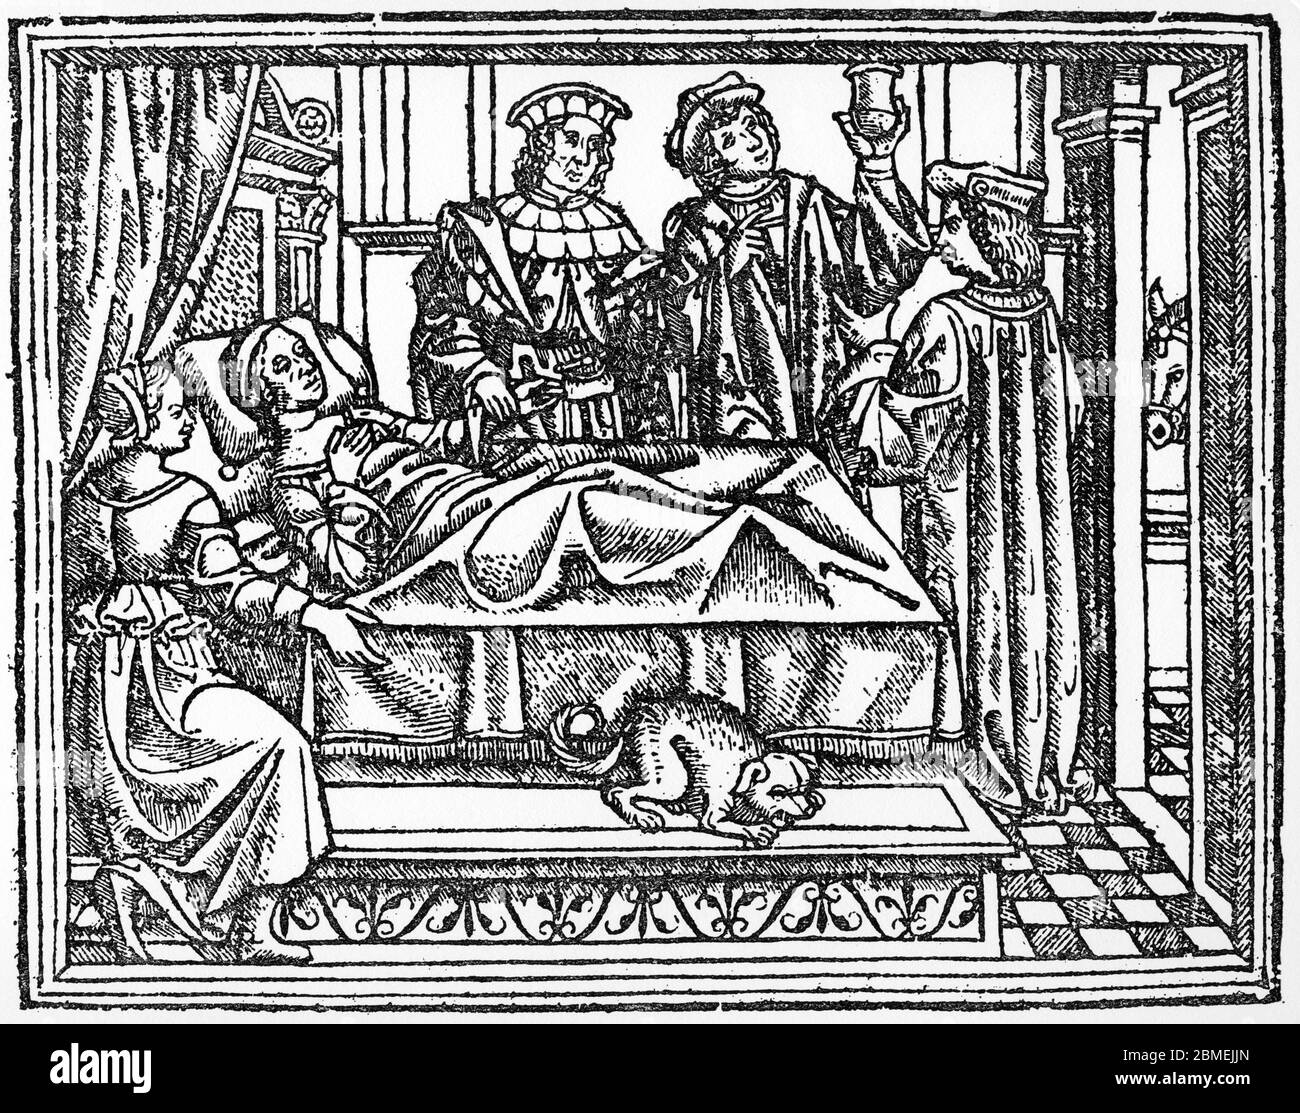 Grupo de médicos atendiendo a una paciente en su lecho. Grabado de 1627 incluído en el tratado de medicina Teoría y práctica en cirugía, de Juan de Vigo (1460-1525), cirujano genovés, médico del papa Julio II. Facsímil. Stock Photo